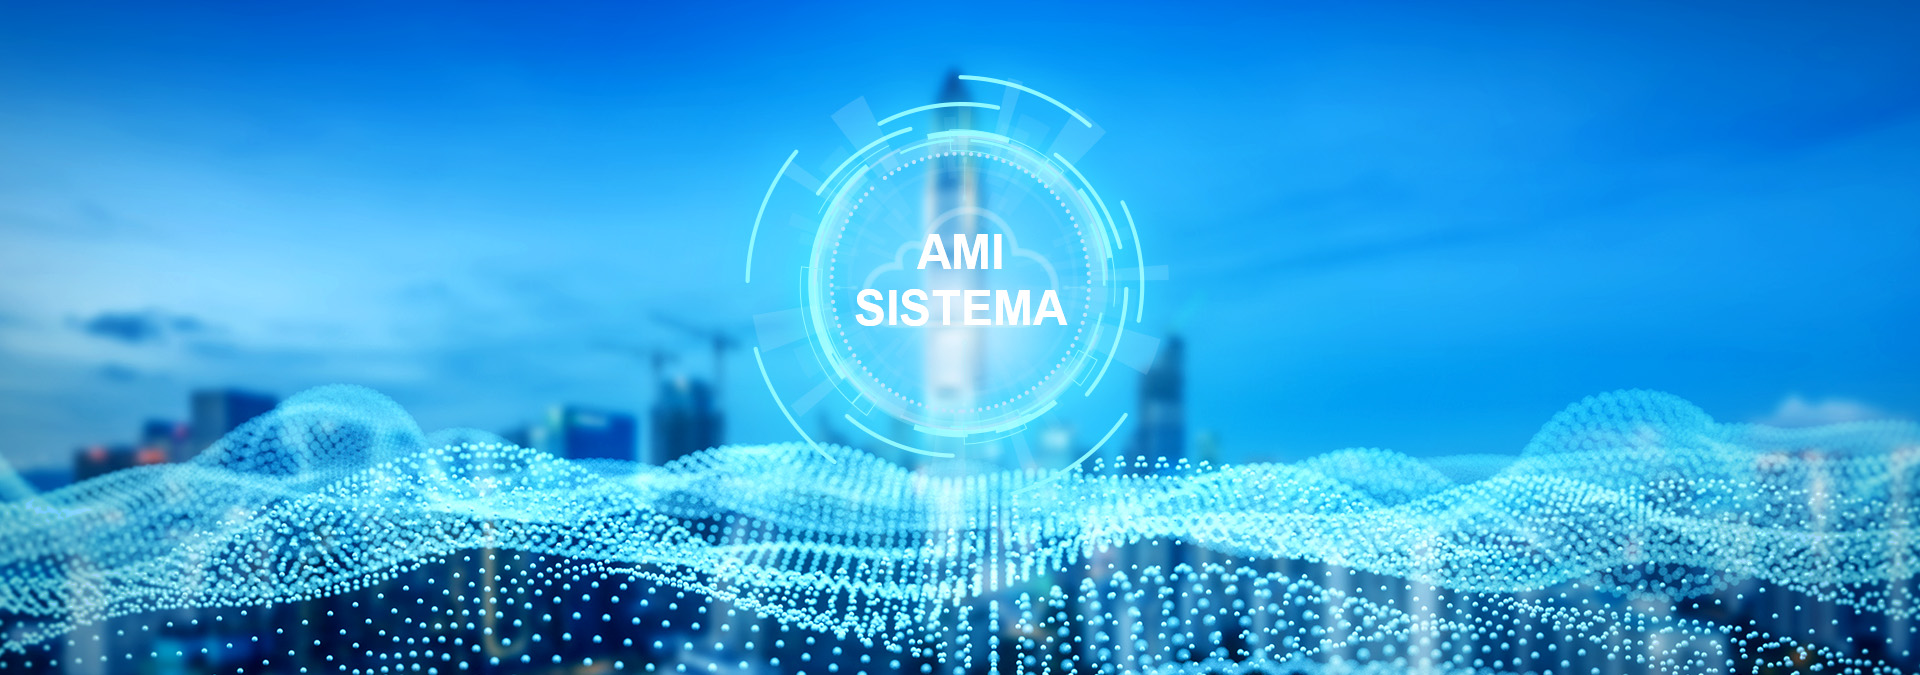 Sistema inteligente de AMI